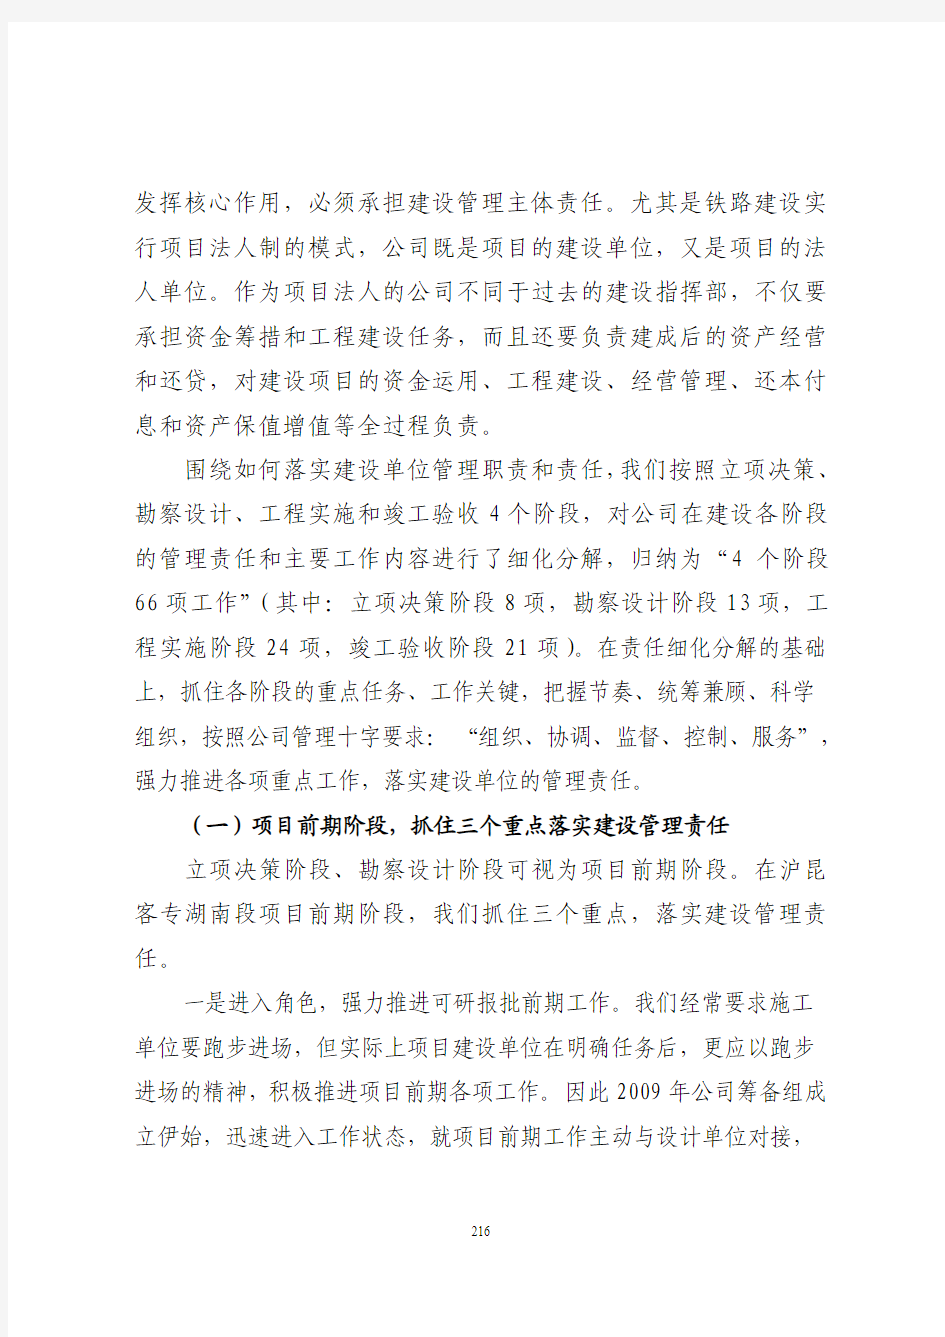 9沪昆客专湖南公司建设管理实践